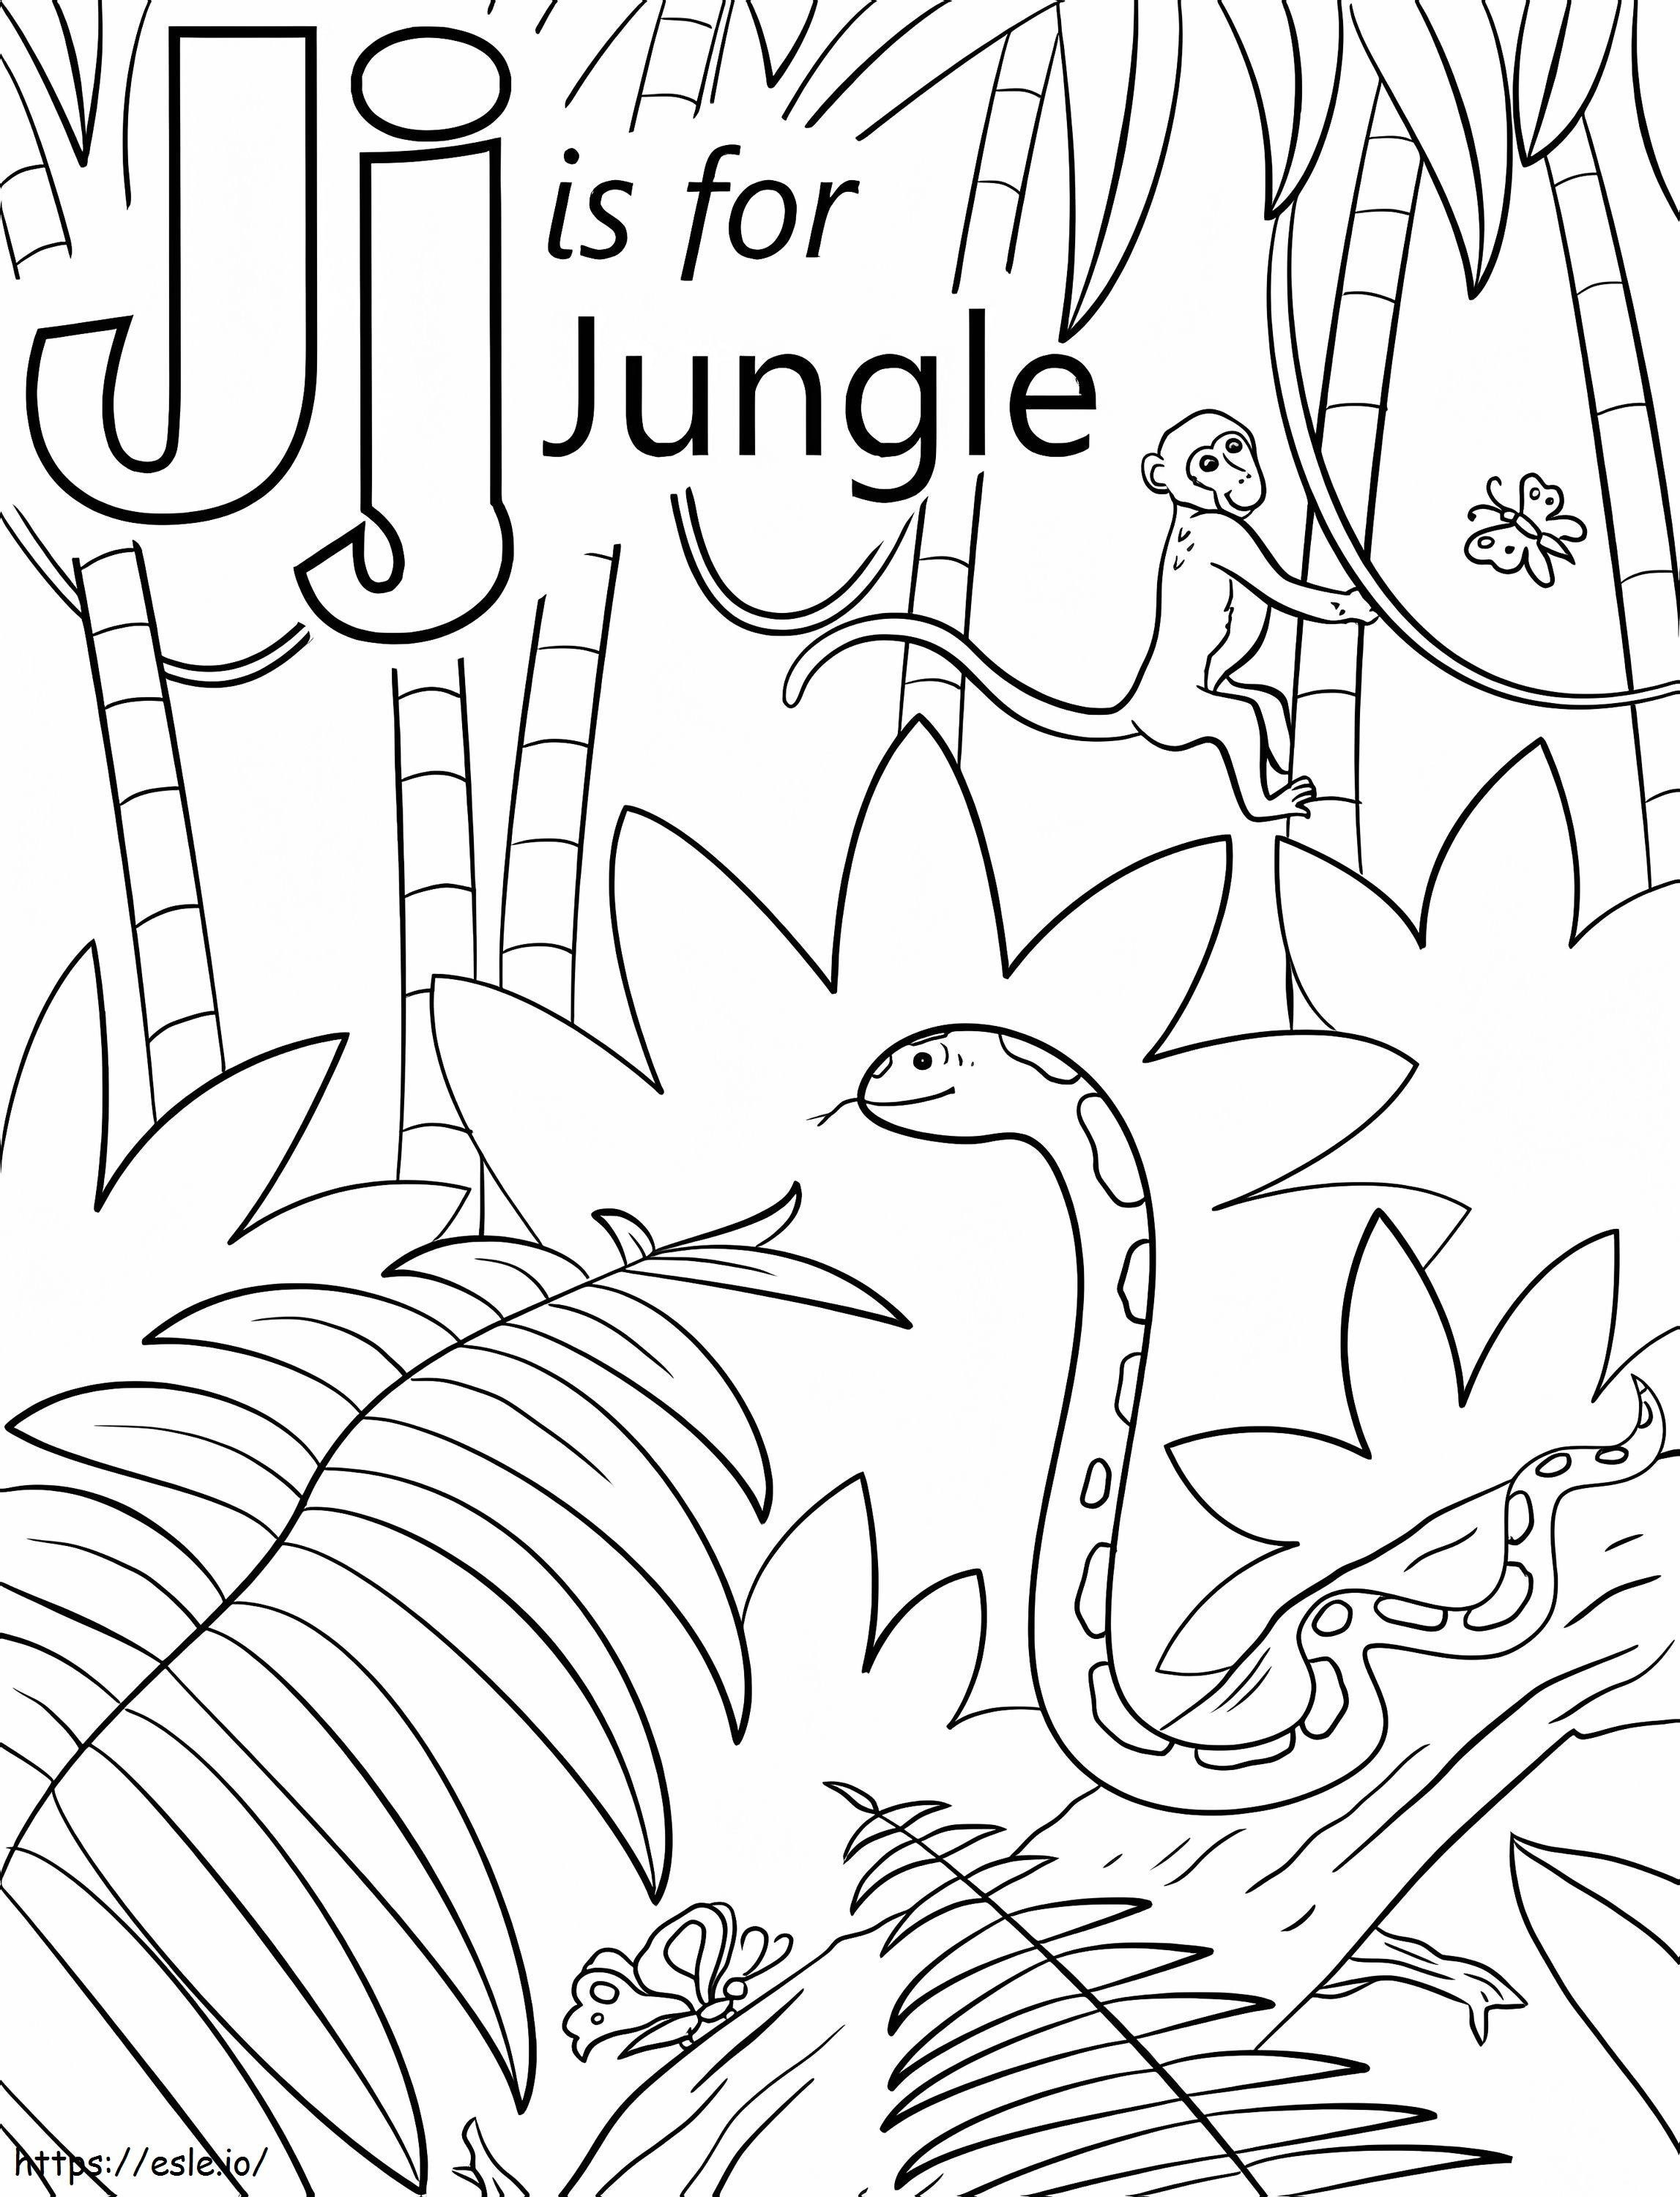 Jungle Letter J de colorat